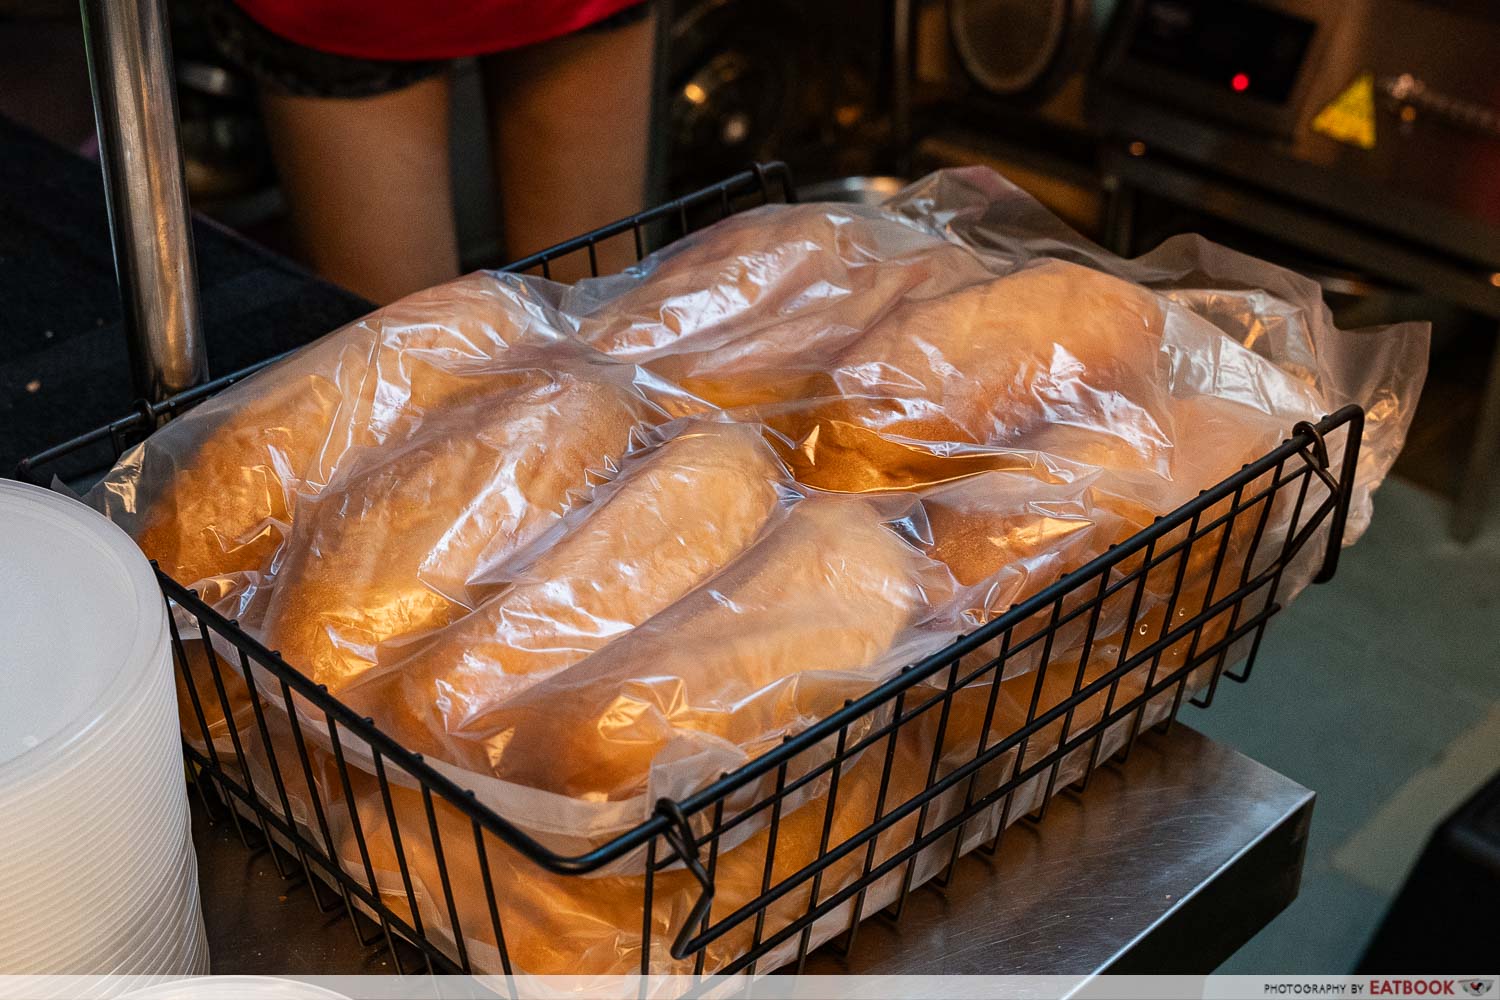 jiakali-wrapped-bread-rolls